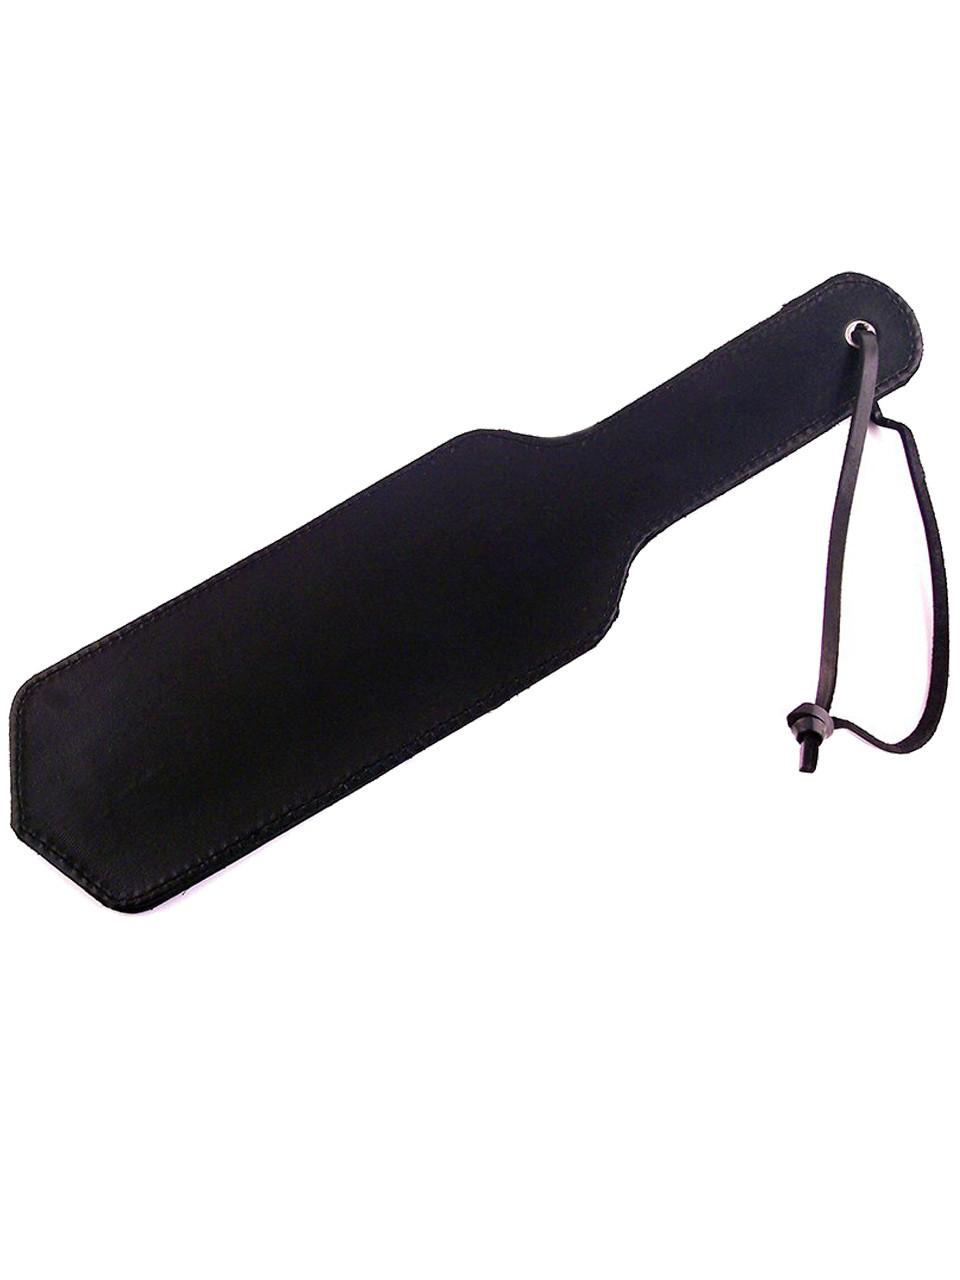 Spanking leather paddle Strap double folded. BDSM gift